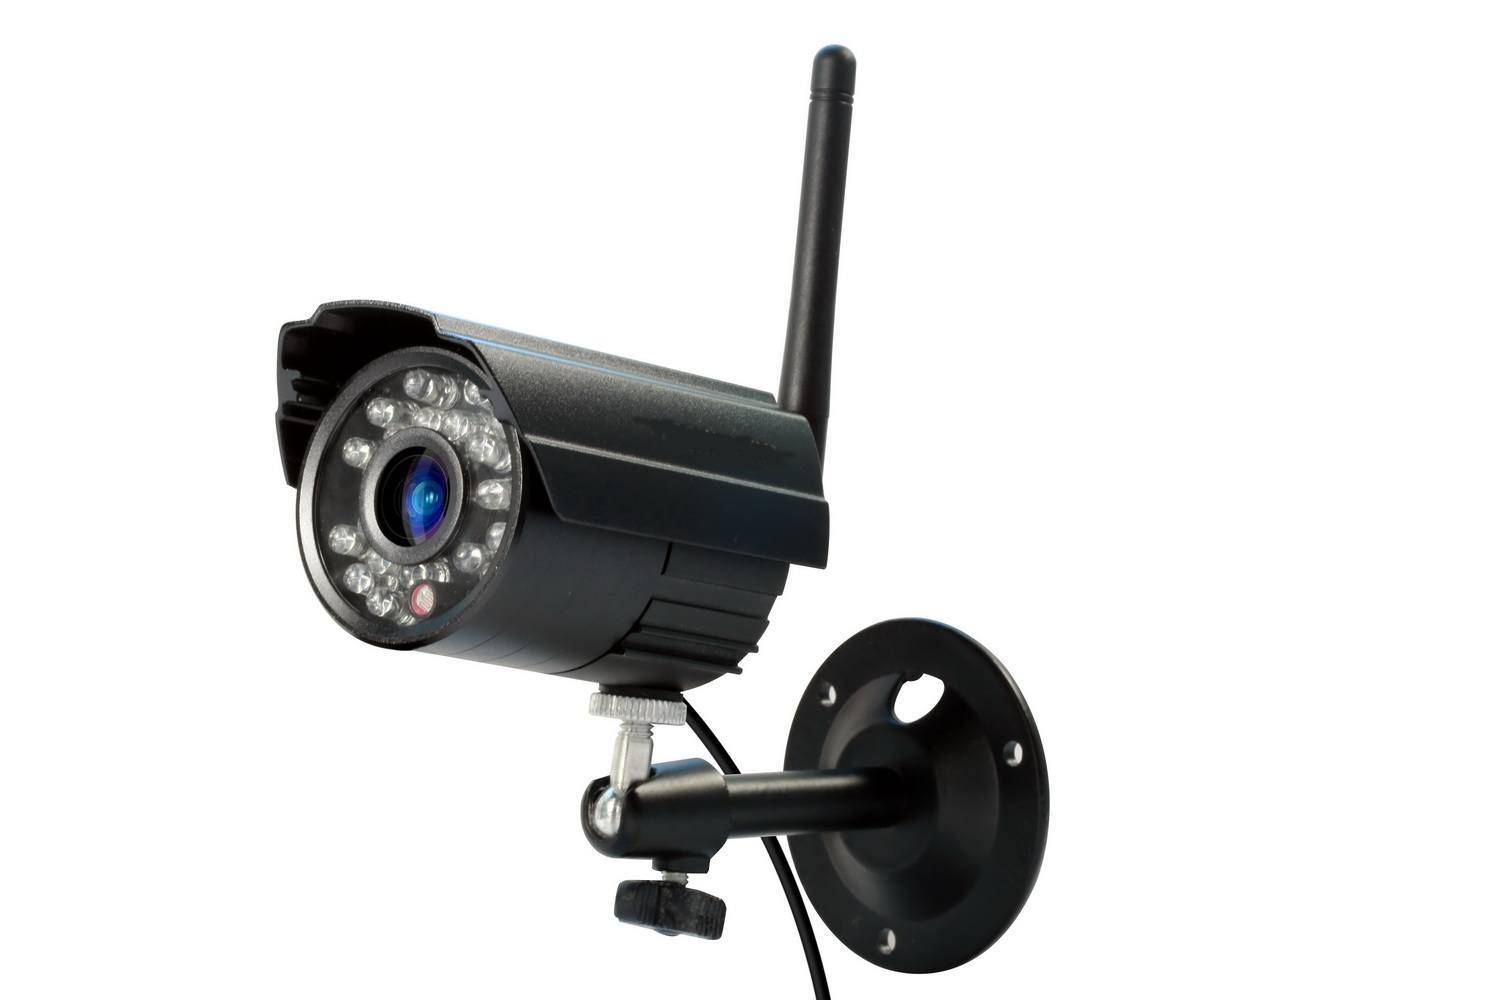 Système de surveillance sans fil avec enregistreur HDD à écran et 8 caméras  IP